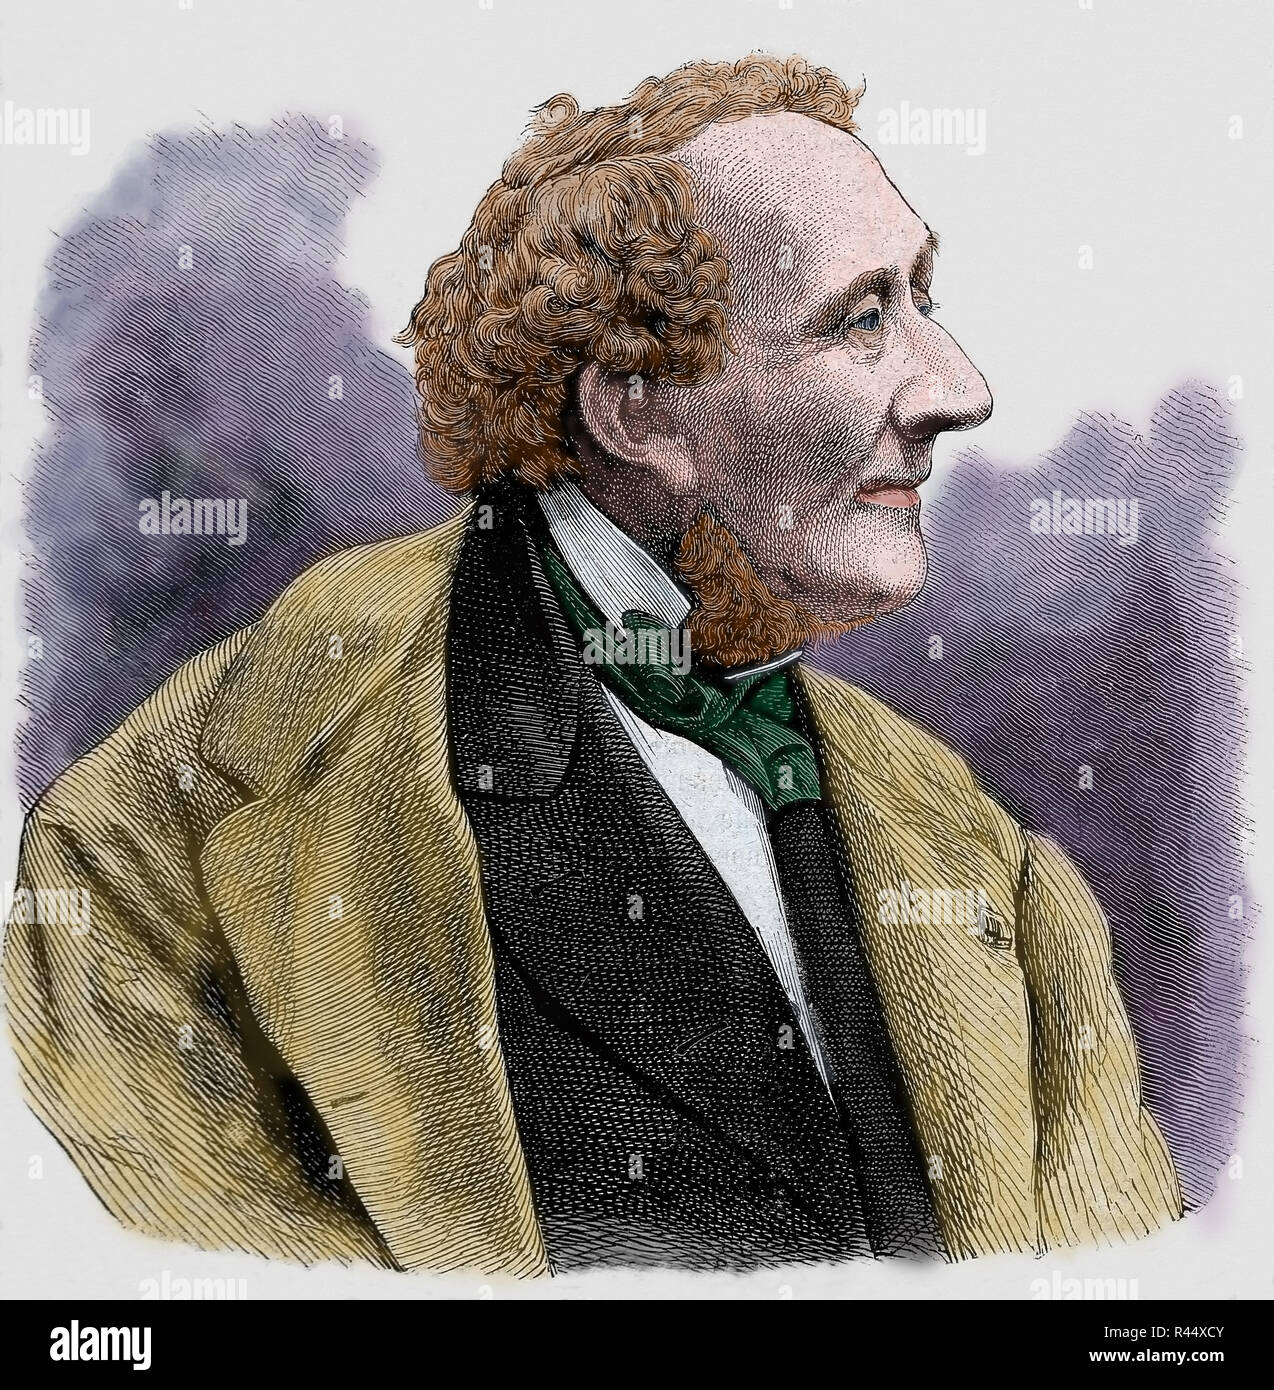 Hans-Christian Andersen (1805-1875) Dänische Autor, reicher Verfasser von Märchen und Geschichten ist berühmt für seine Kinder. Gravur. Später Färbung Stockfoto